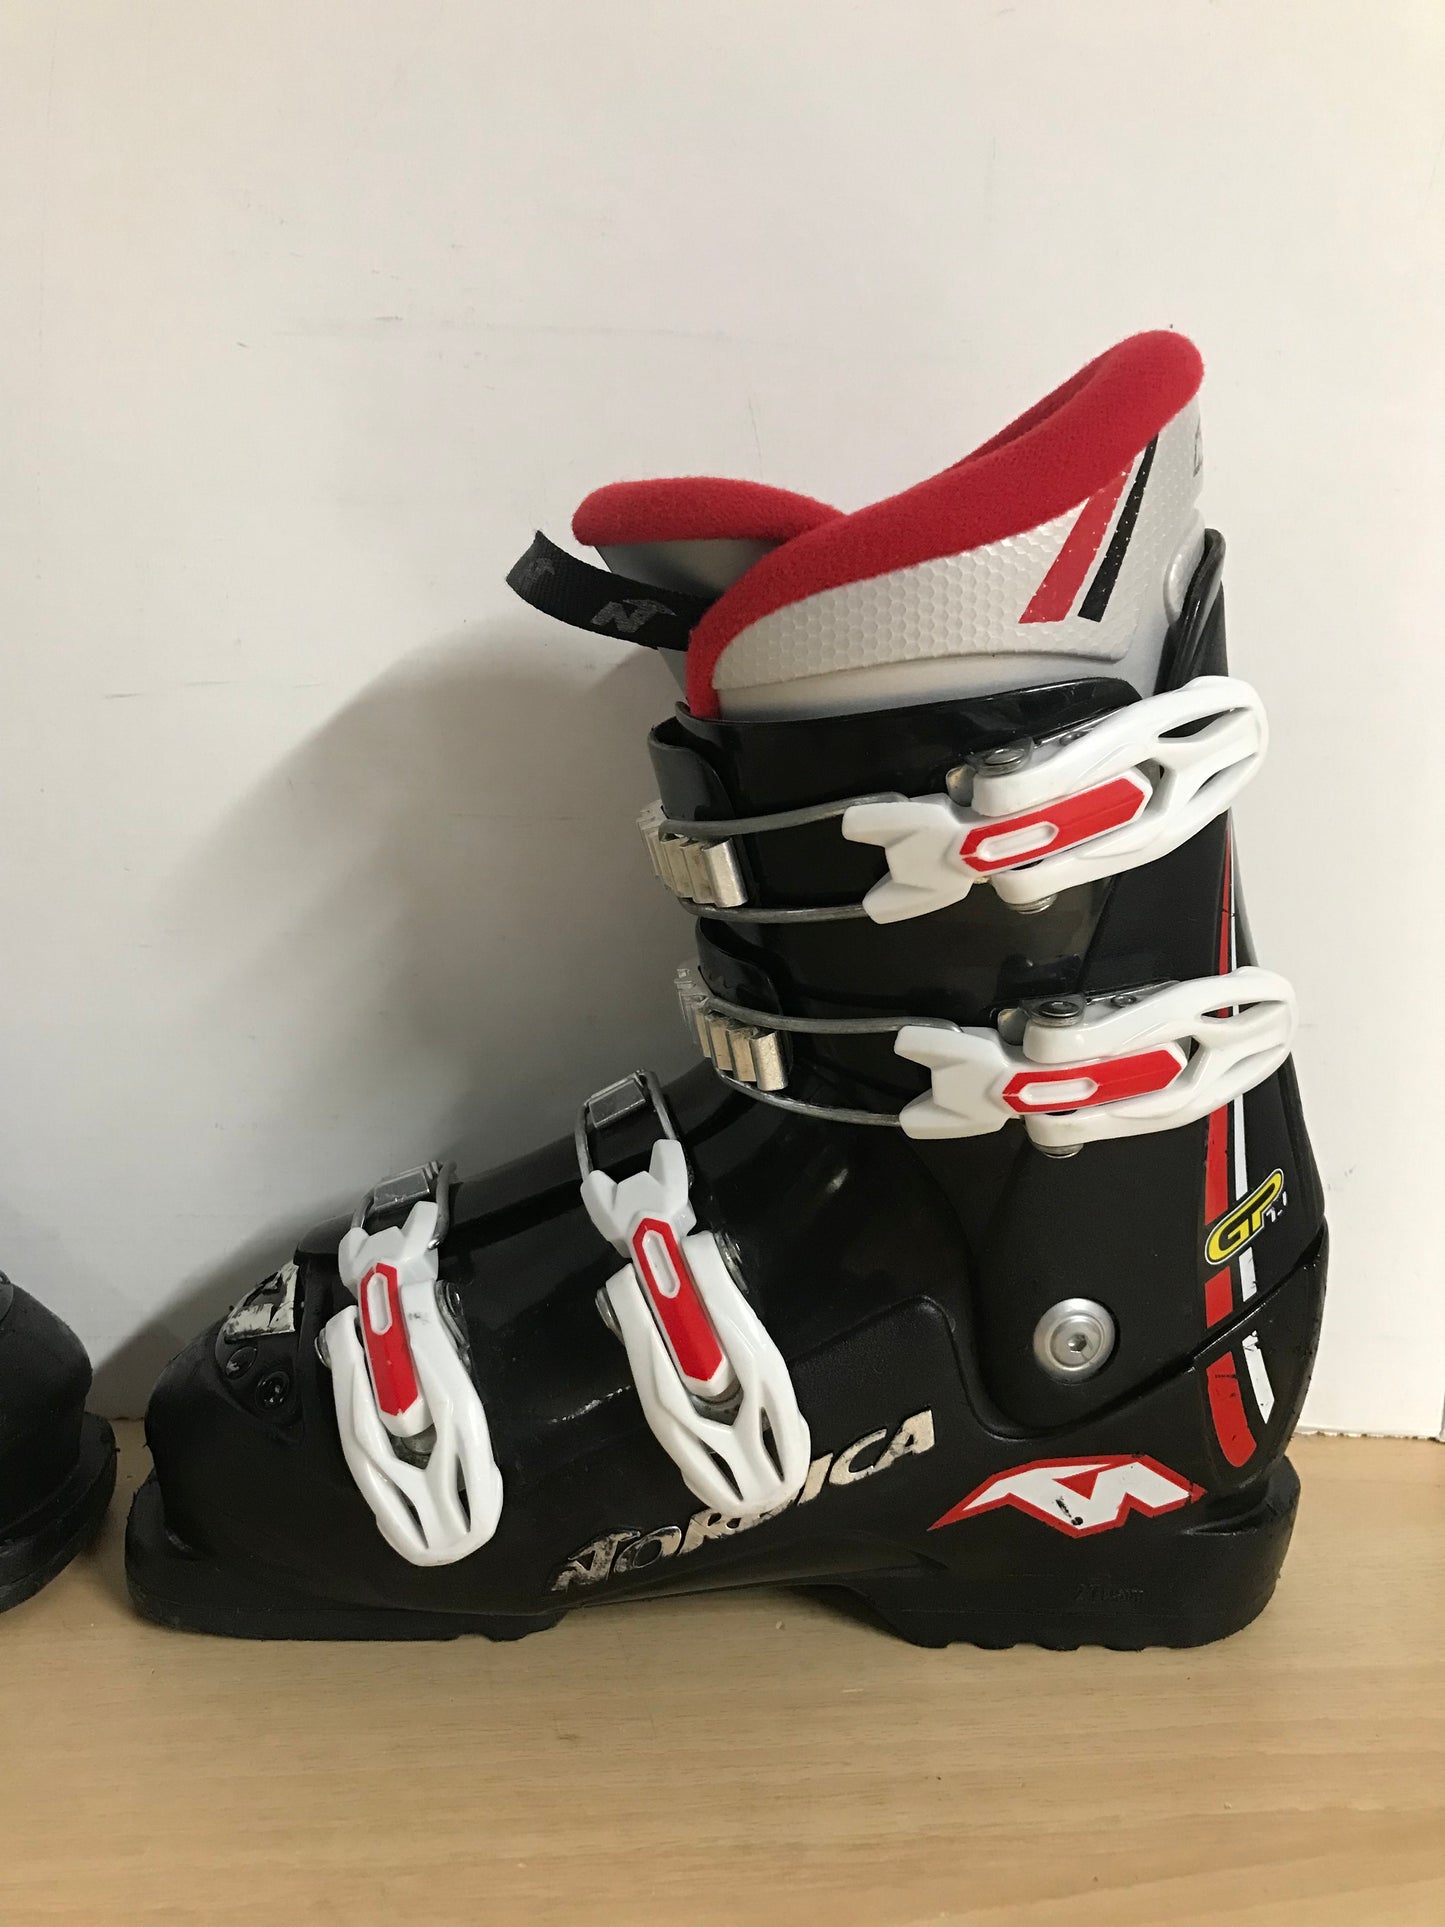 Ski Boots Mondo Size 23.0  Child Size 5-6 270 mm Nordica Black Red White Minor Wear